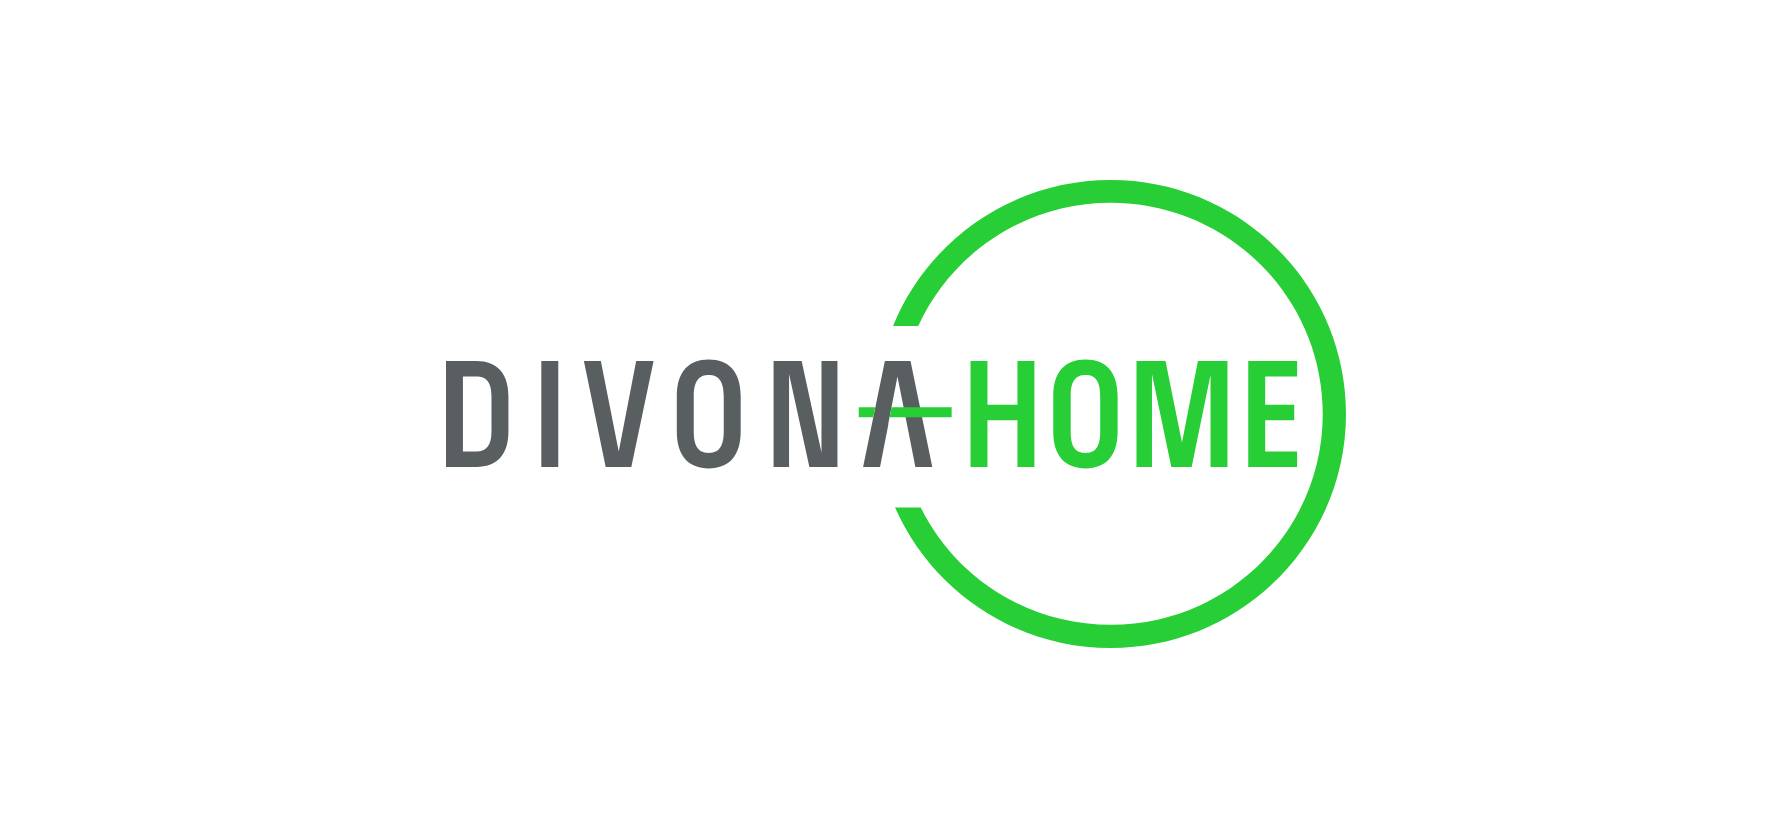 (c) Divonahome.com